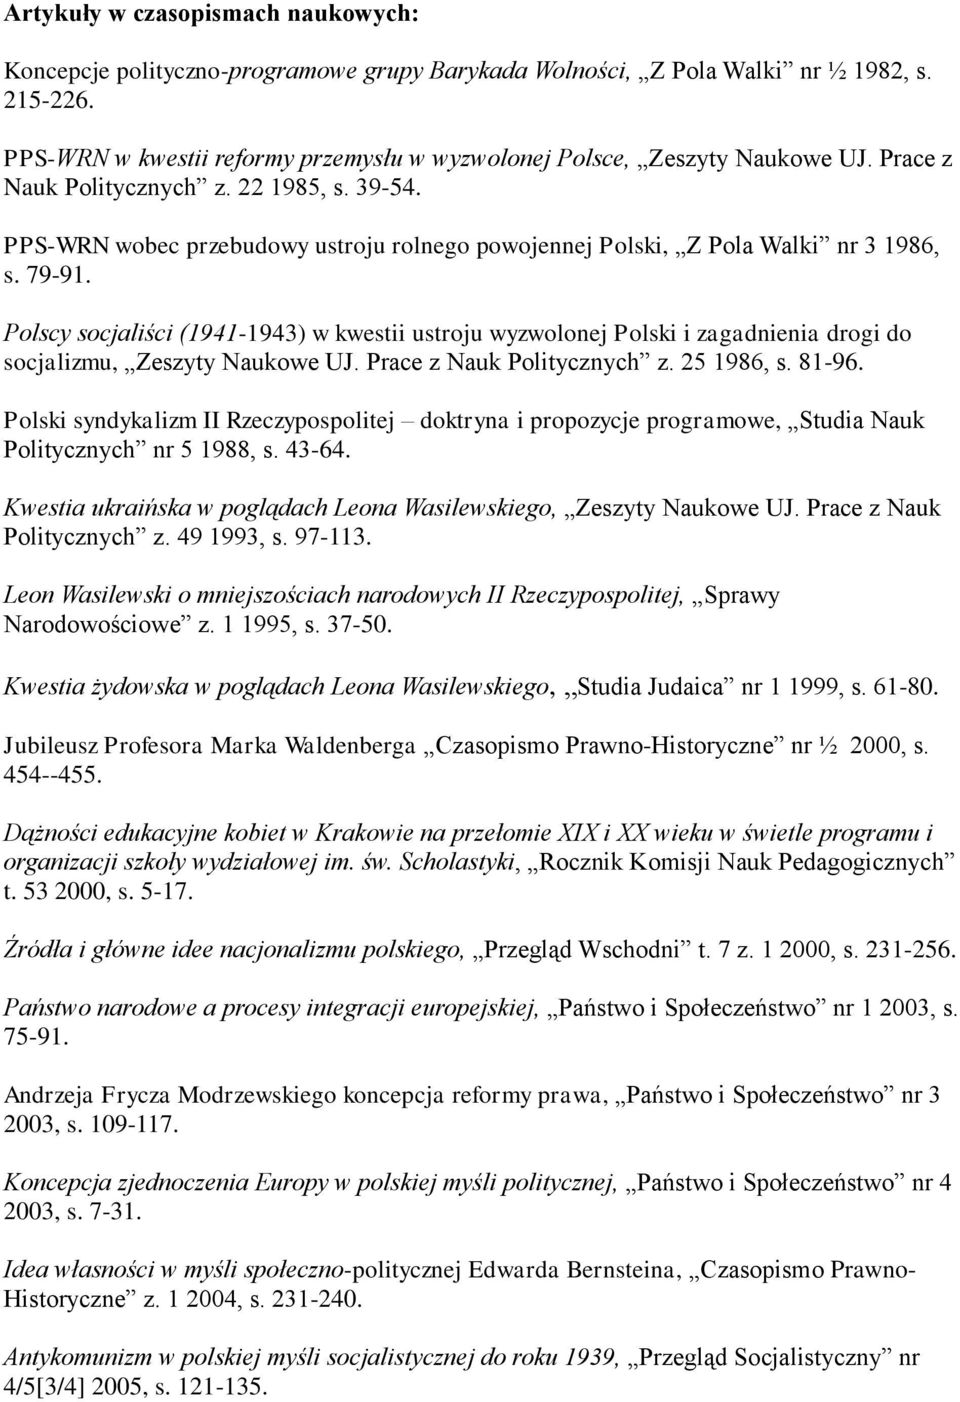 PPS-WRN wobec przebudowy ustroju rolnego powojennej Polski, Z Pola Walki nr 3 1986, s. 79-91.